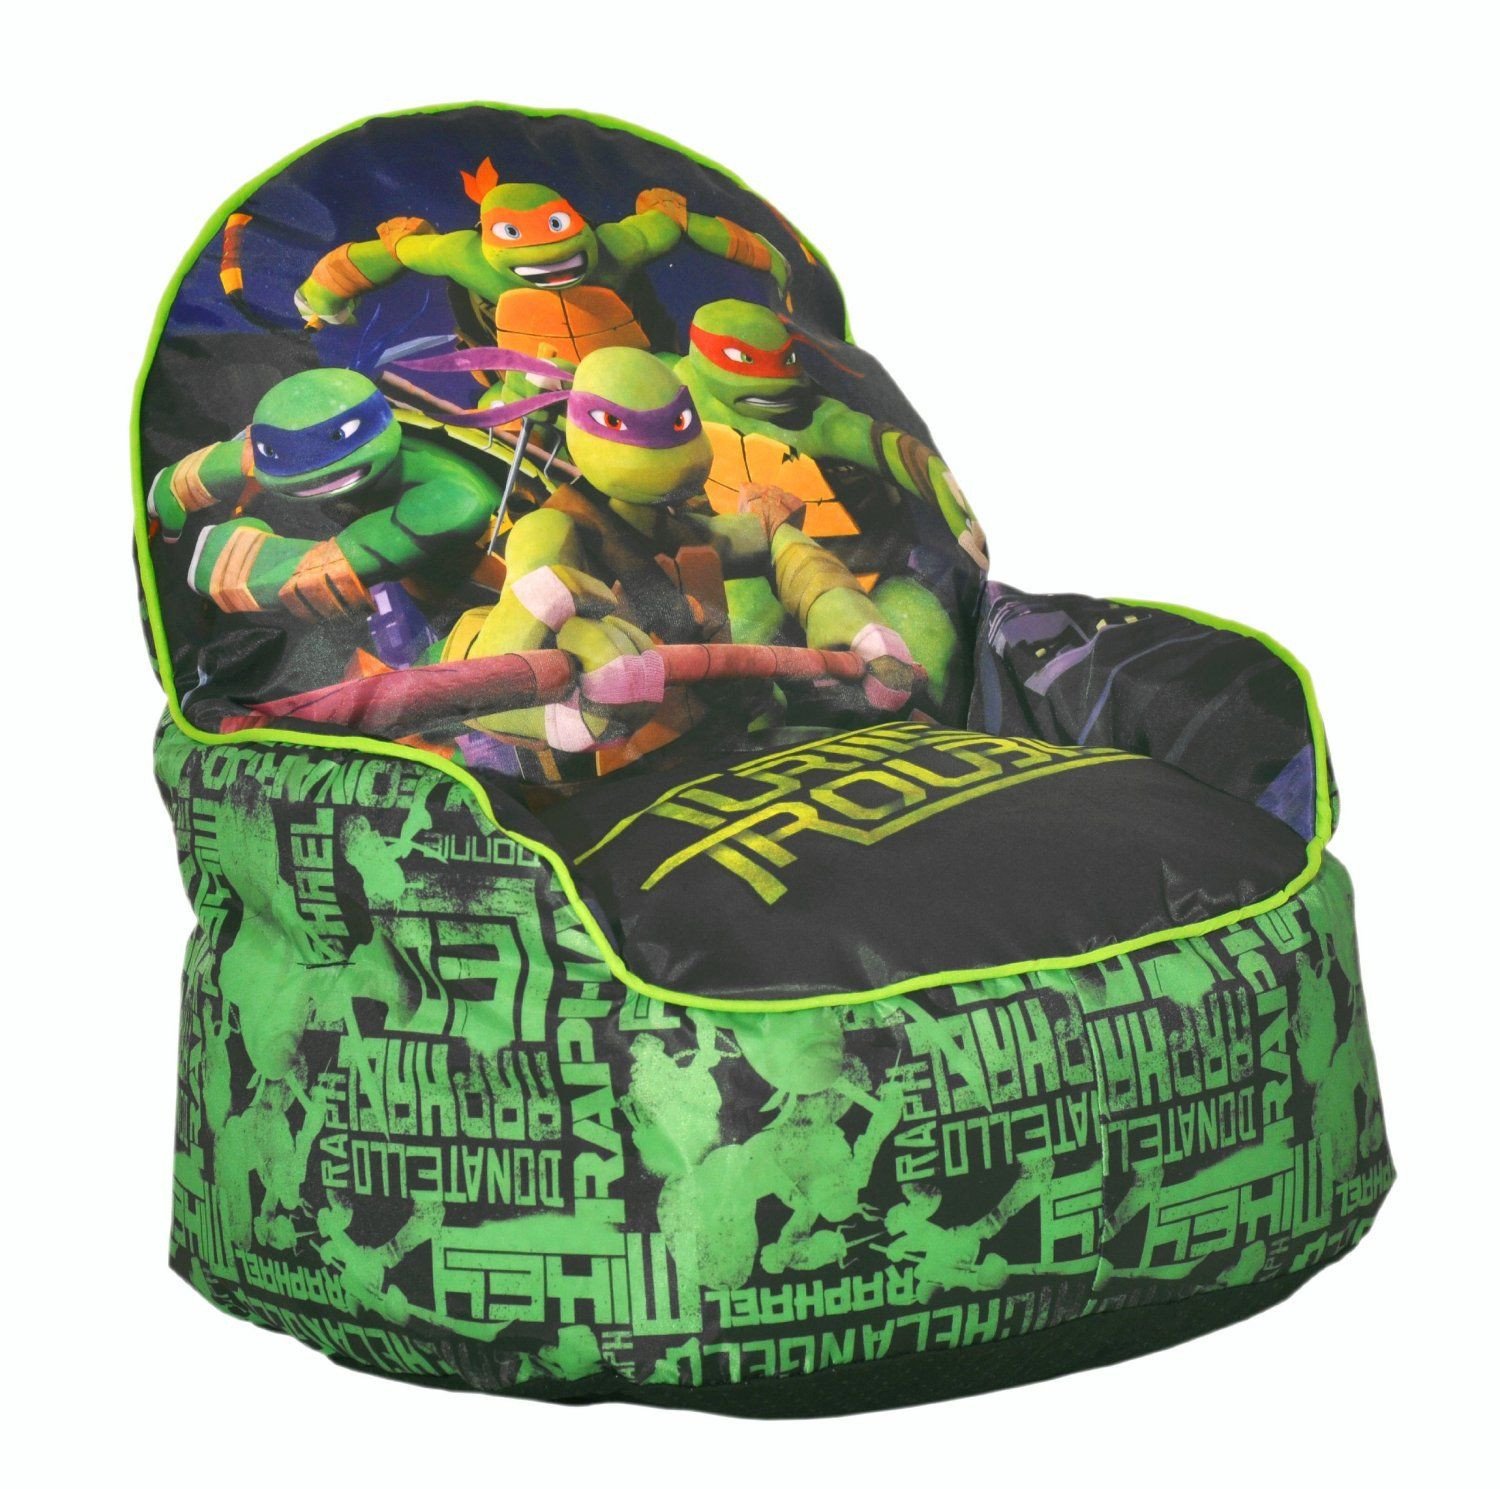 Teenage Mutant Ninja Turtles Bedroom Best Of Teenage Mutant Ninja Turtles Bean Bag Chair Tmnt